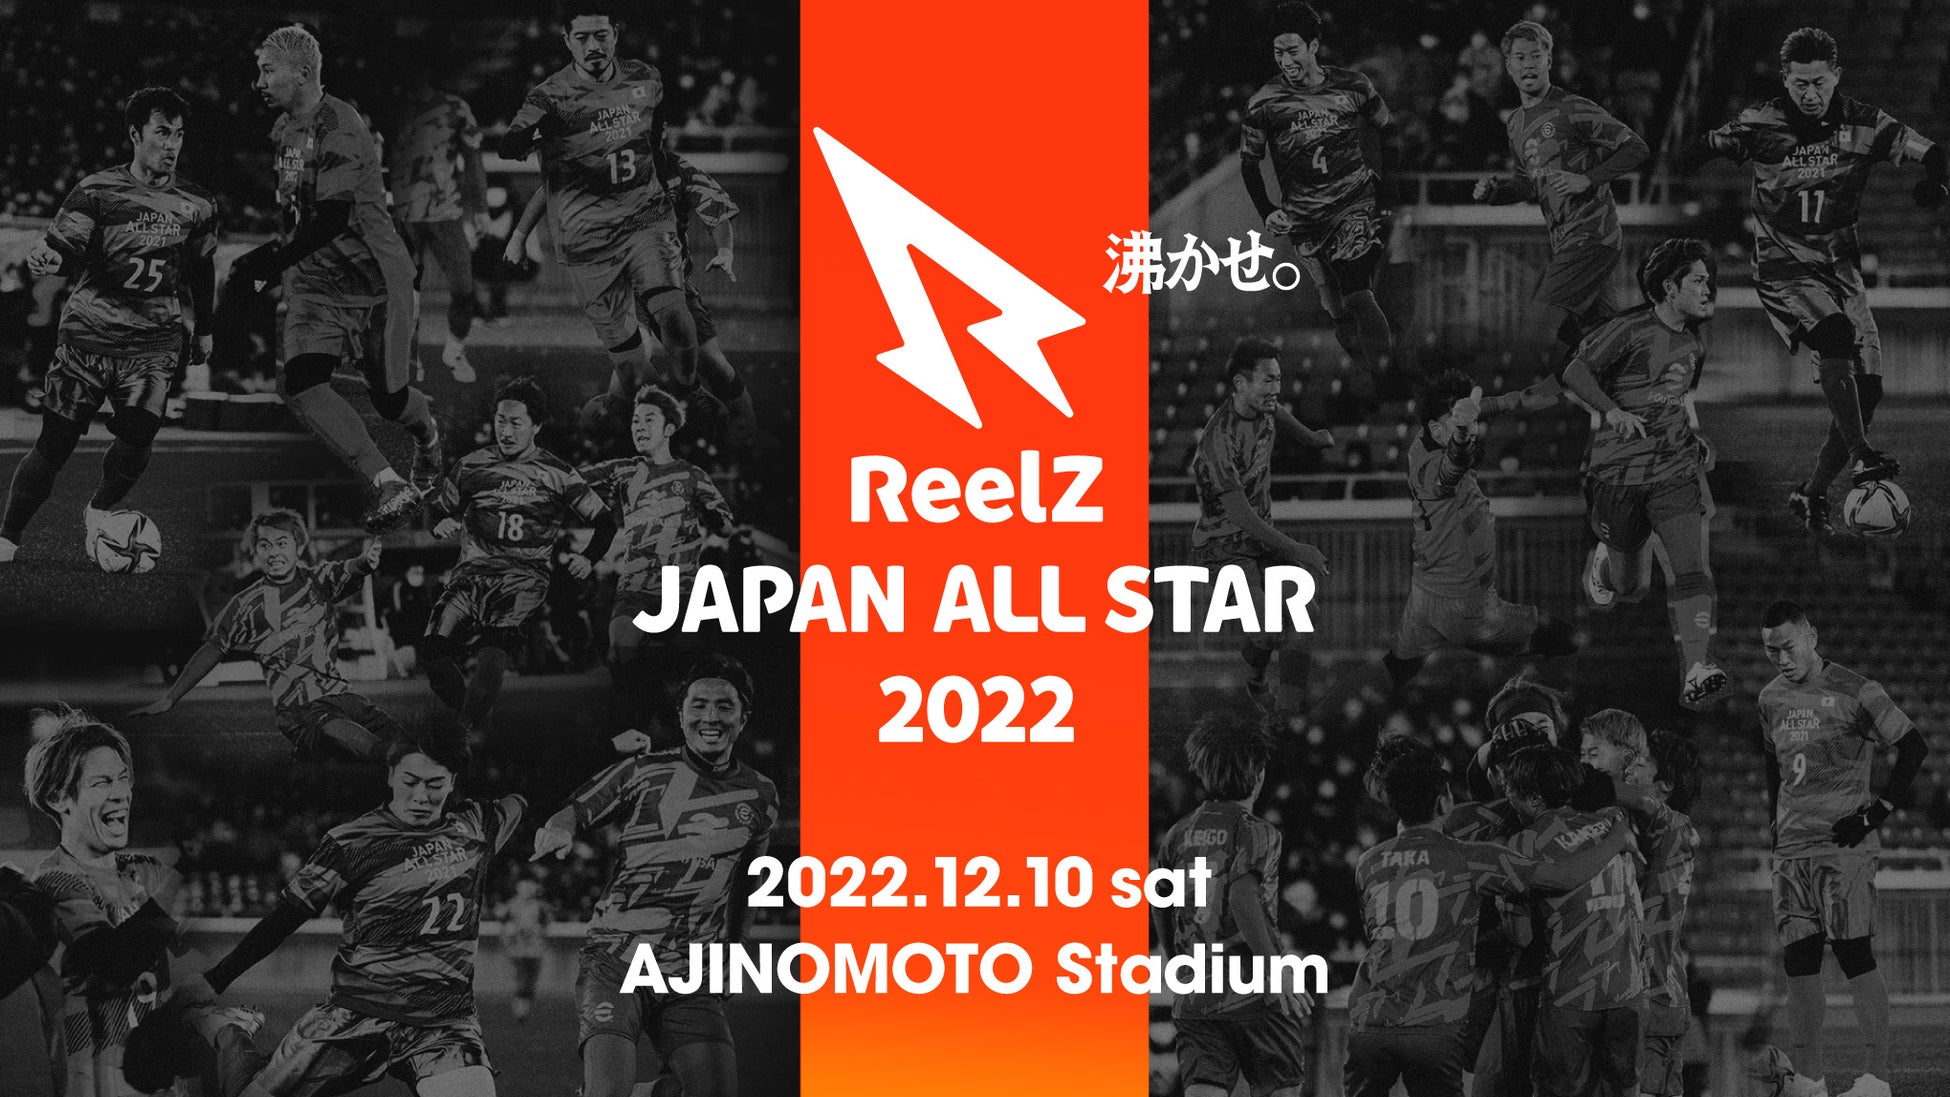 【最新情報解禁】サッカーの祭典「ReelZ JAPAN ALL STAR 2022」出場するプロサッカー選手の発表。「ばんばんざい」の生歌ライブや話題のスタグル等、試合以外にも楽しみが盛りだくさん！のサブ画像1